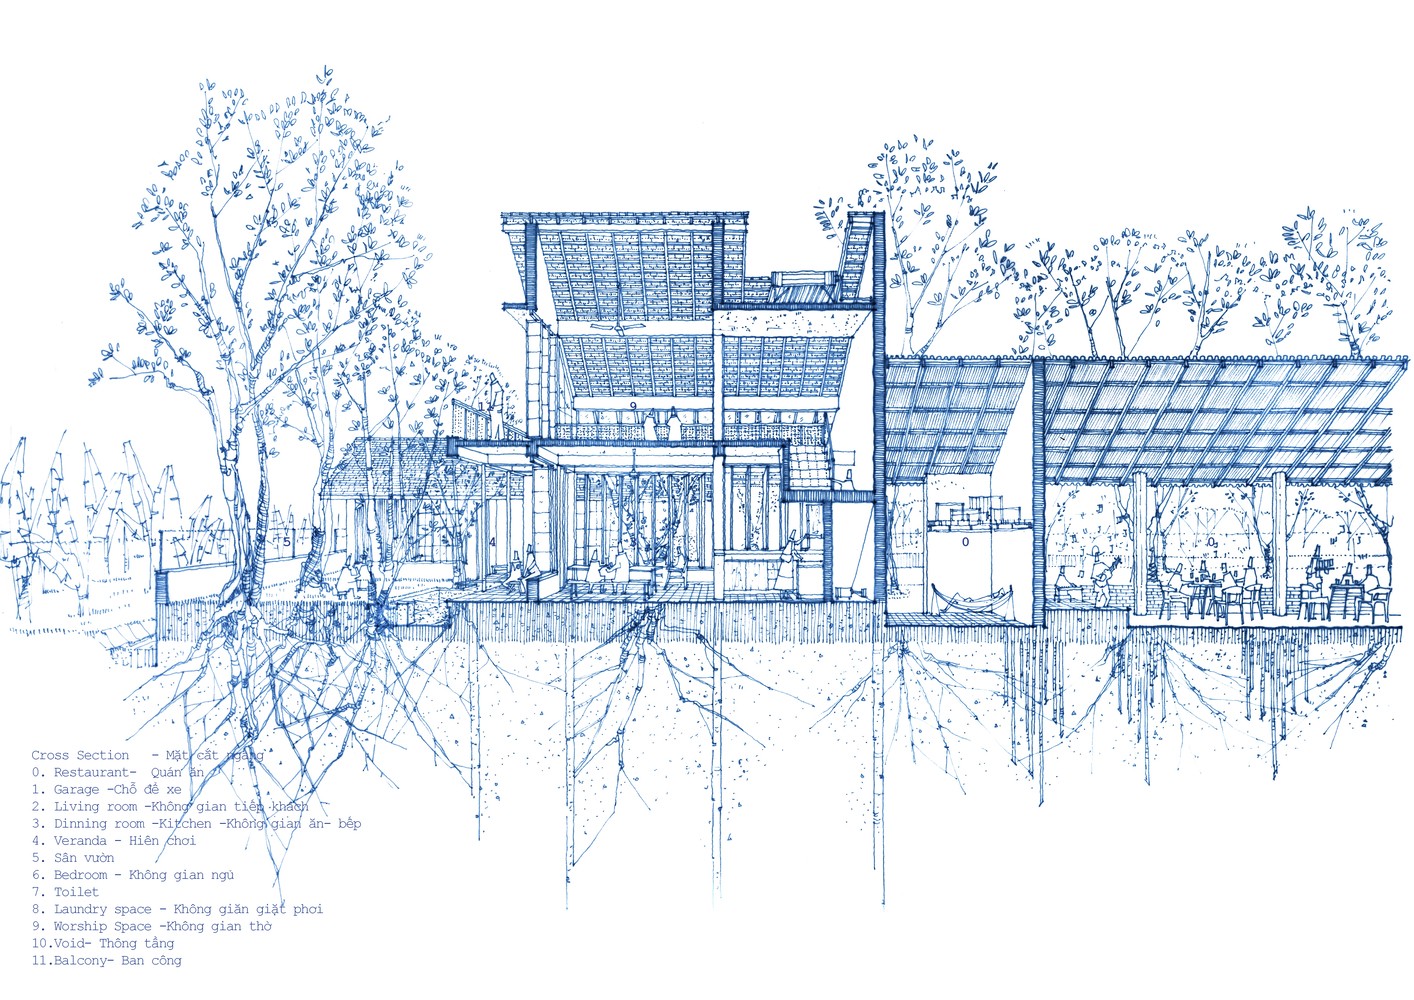 

Thiết kế bản vẽ chi tiết mặt cắt ngang Bình Dương House
